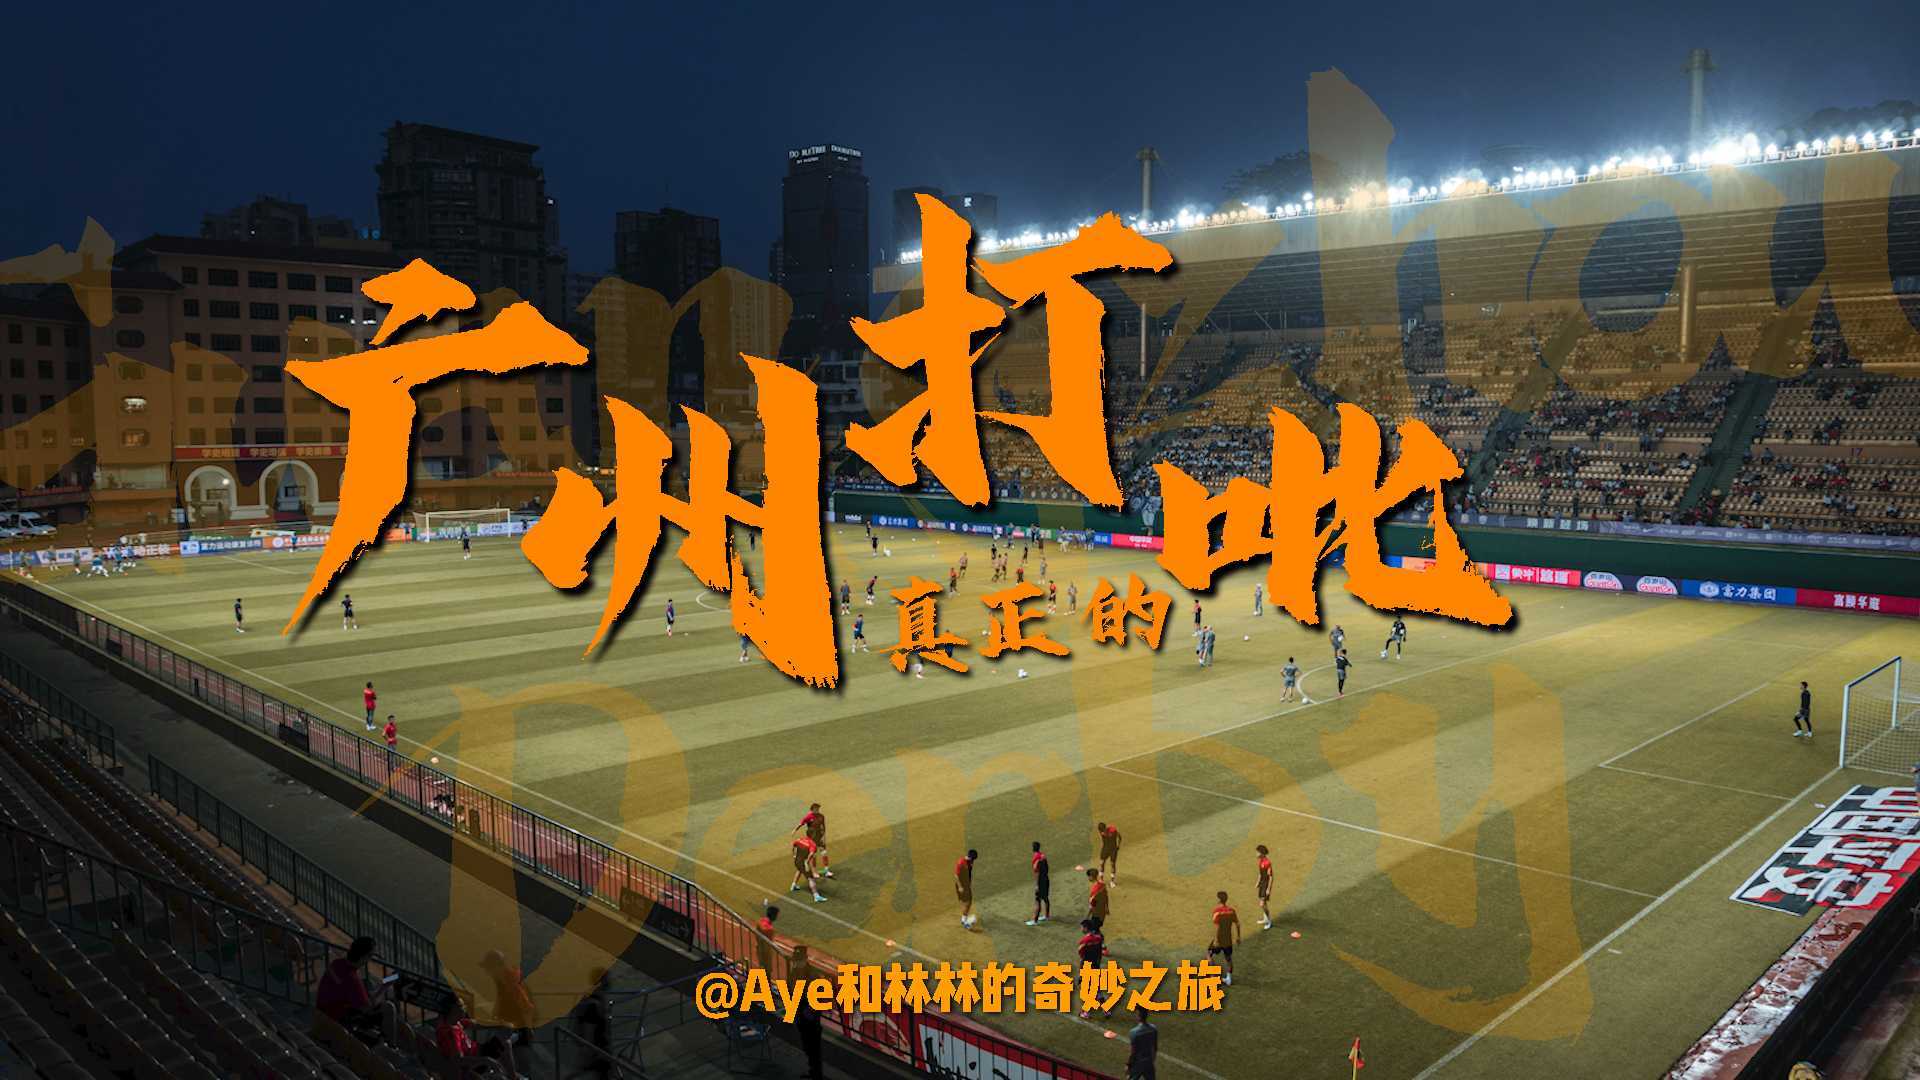 【足球Vlog】这才是我们熟悉的广州打吡丨高燃记录